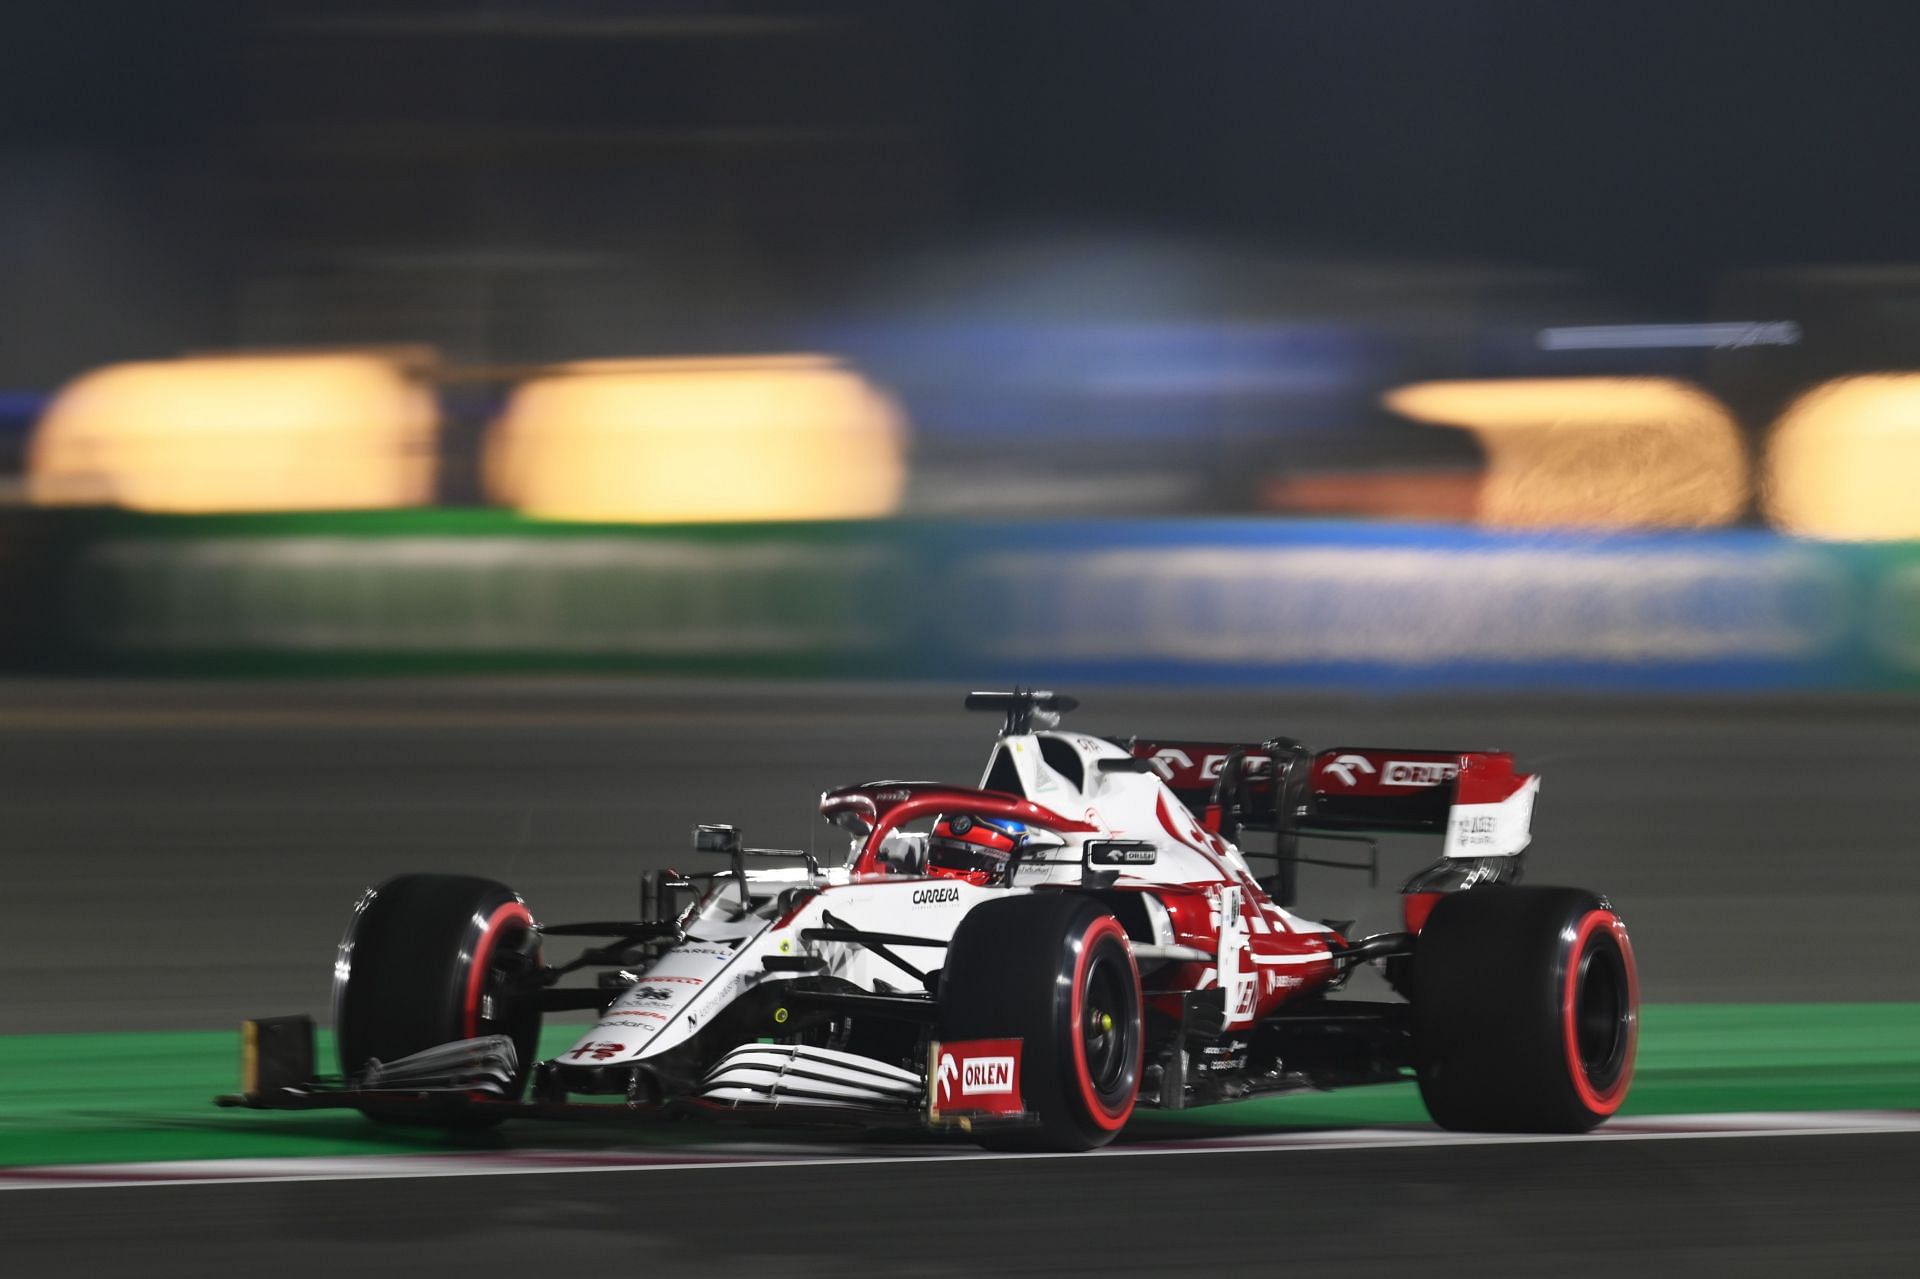 F1 Grand Prix of Qatar - Kimi Raikkonen during qualifying on Saturday.